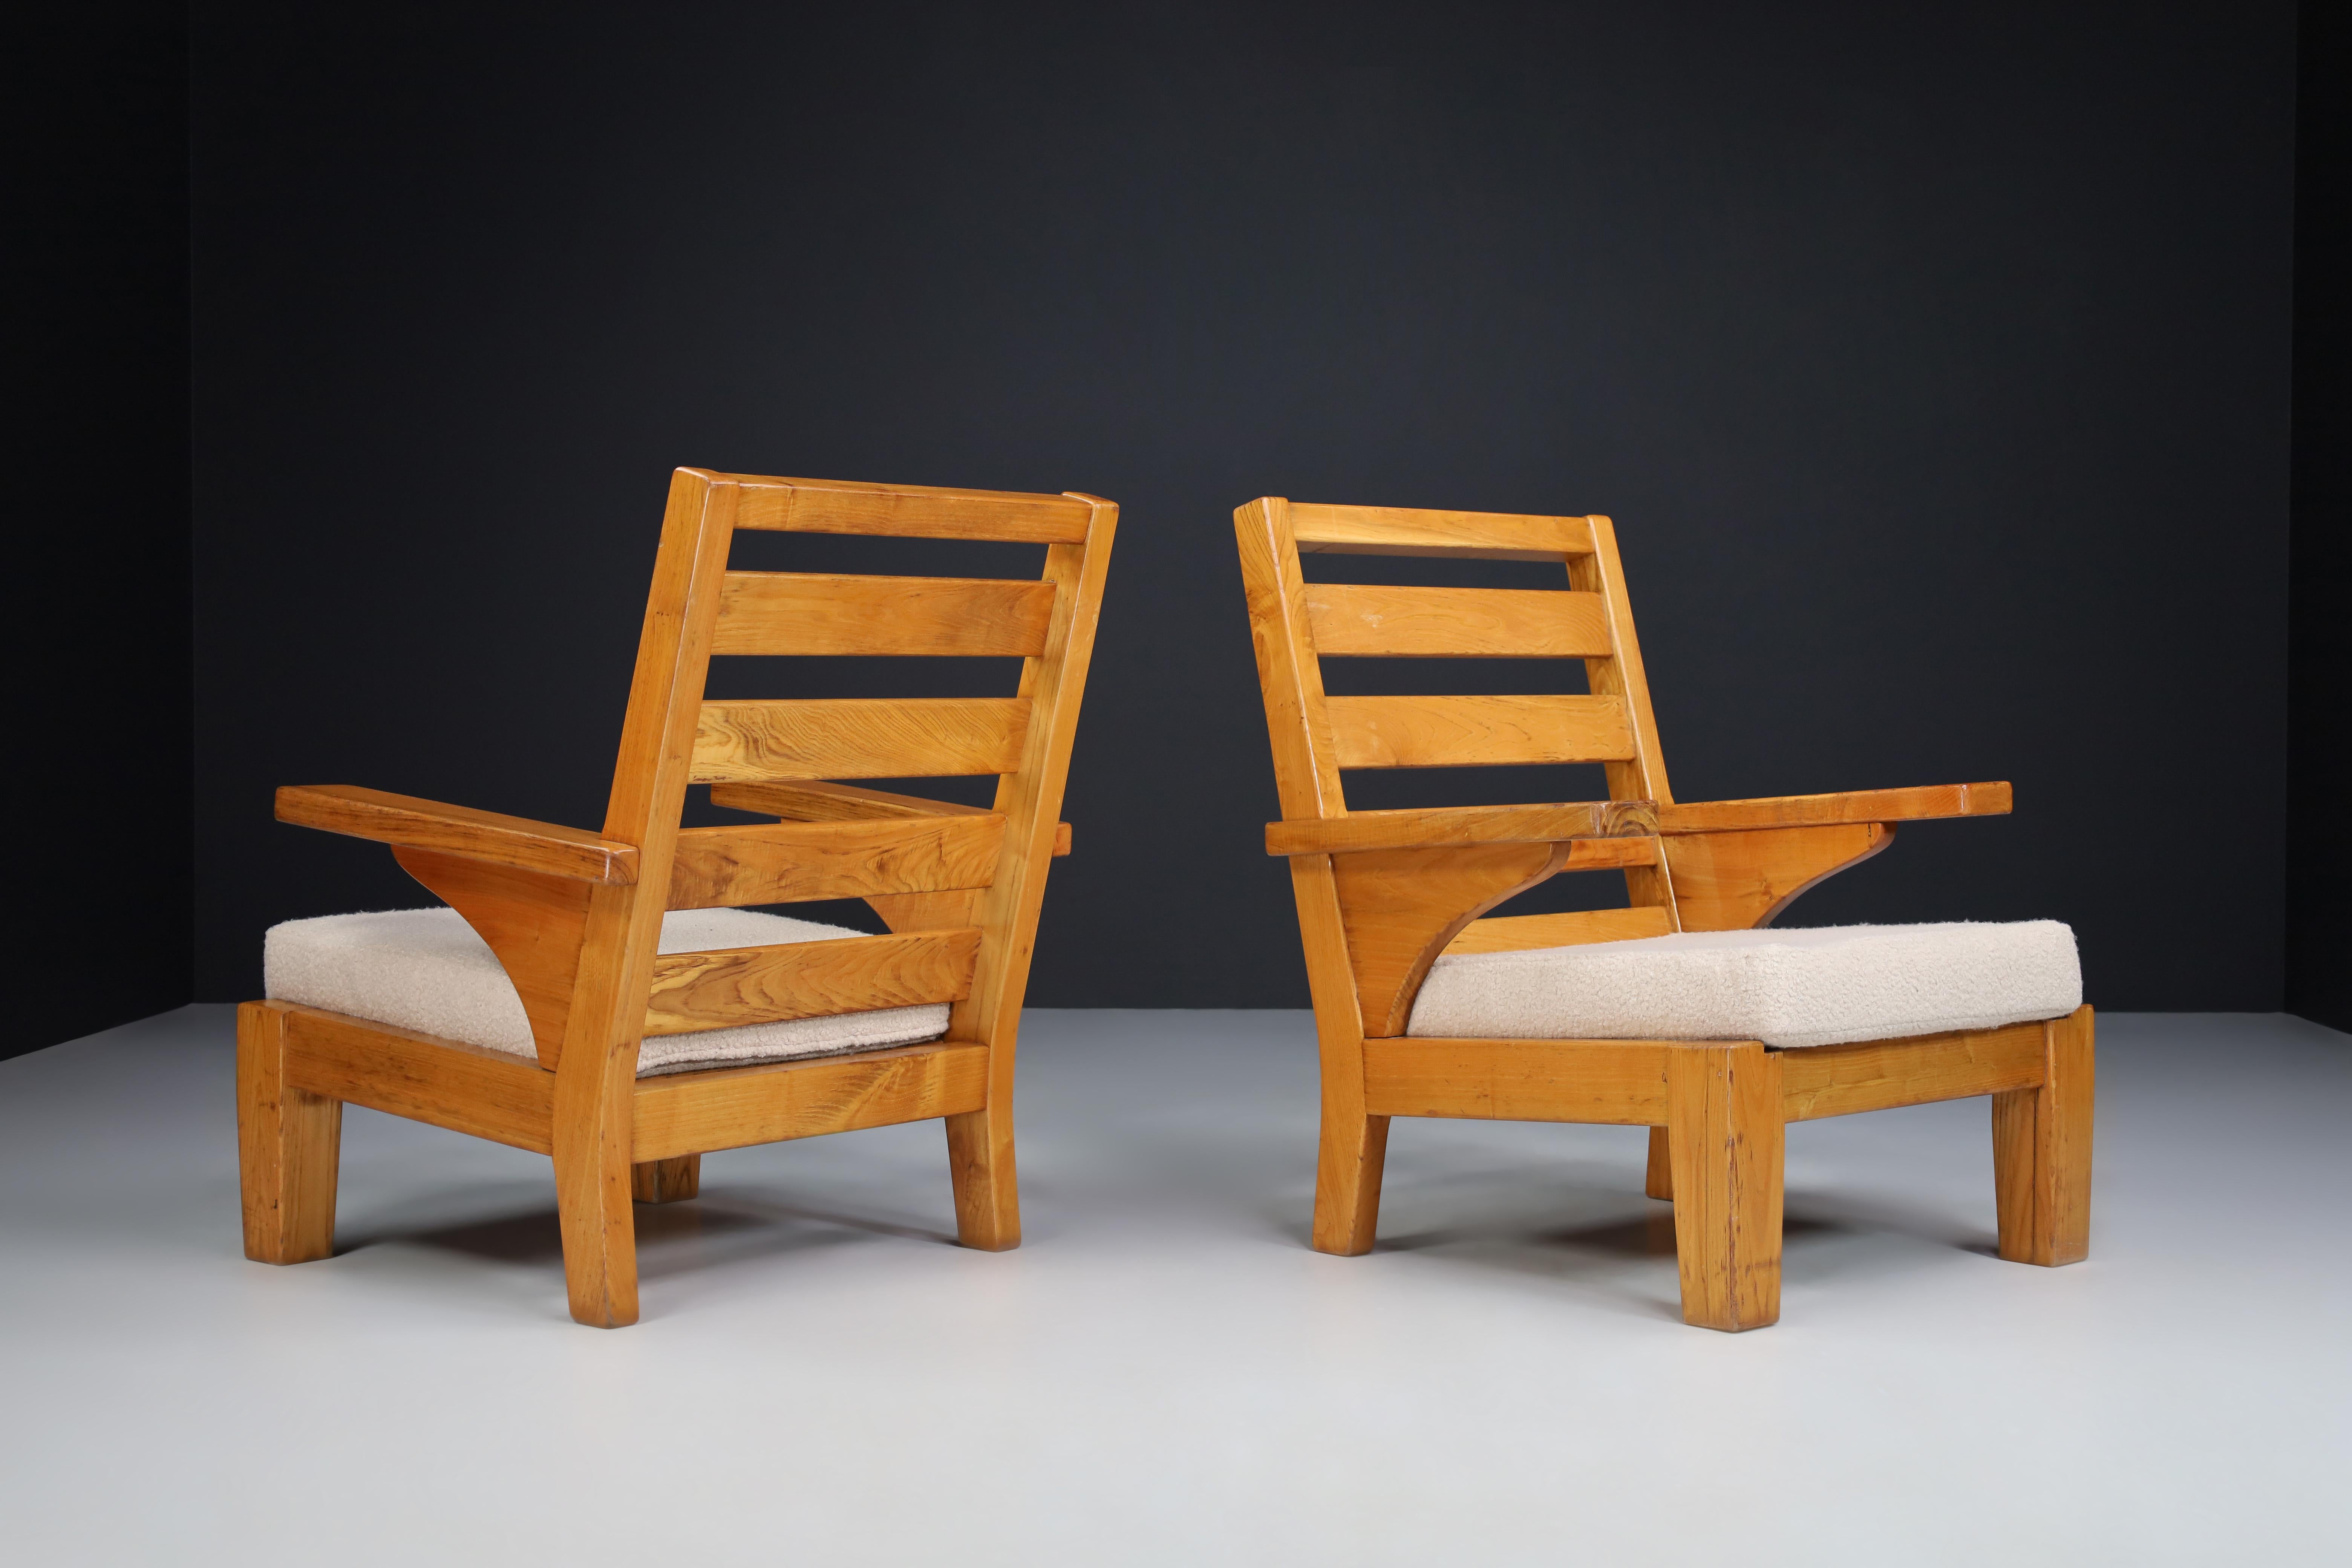 Chaises longues en pin patiné et tissu teddy, Espagne années 1960

Paire robuste de deux chaises de salon en bois de pin et tissu pelucheux retouché, conçue et fabriquée en Espagne dans les années 1960. Ces deux fauteuils constitueraient un ajout